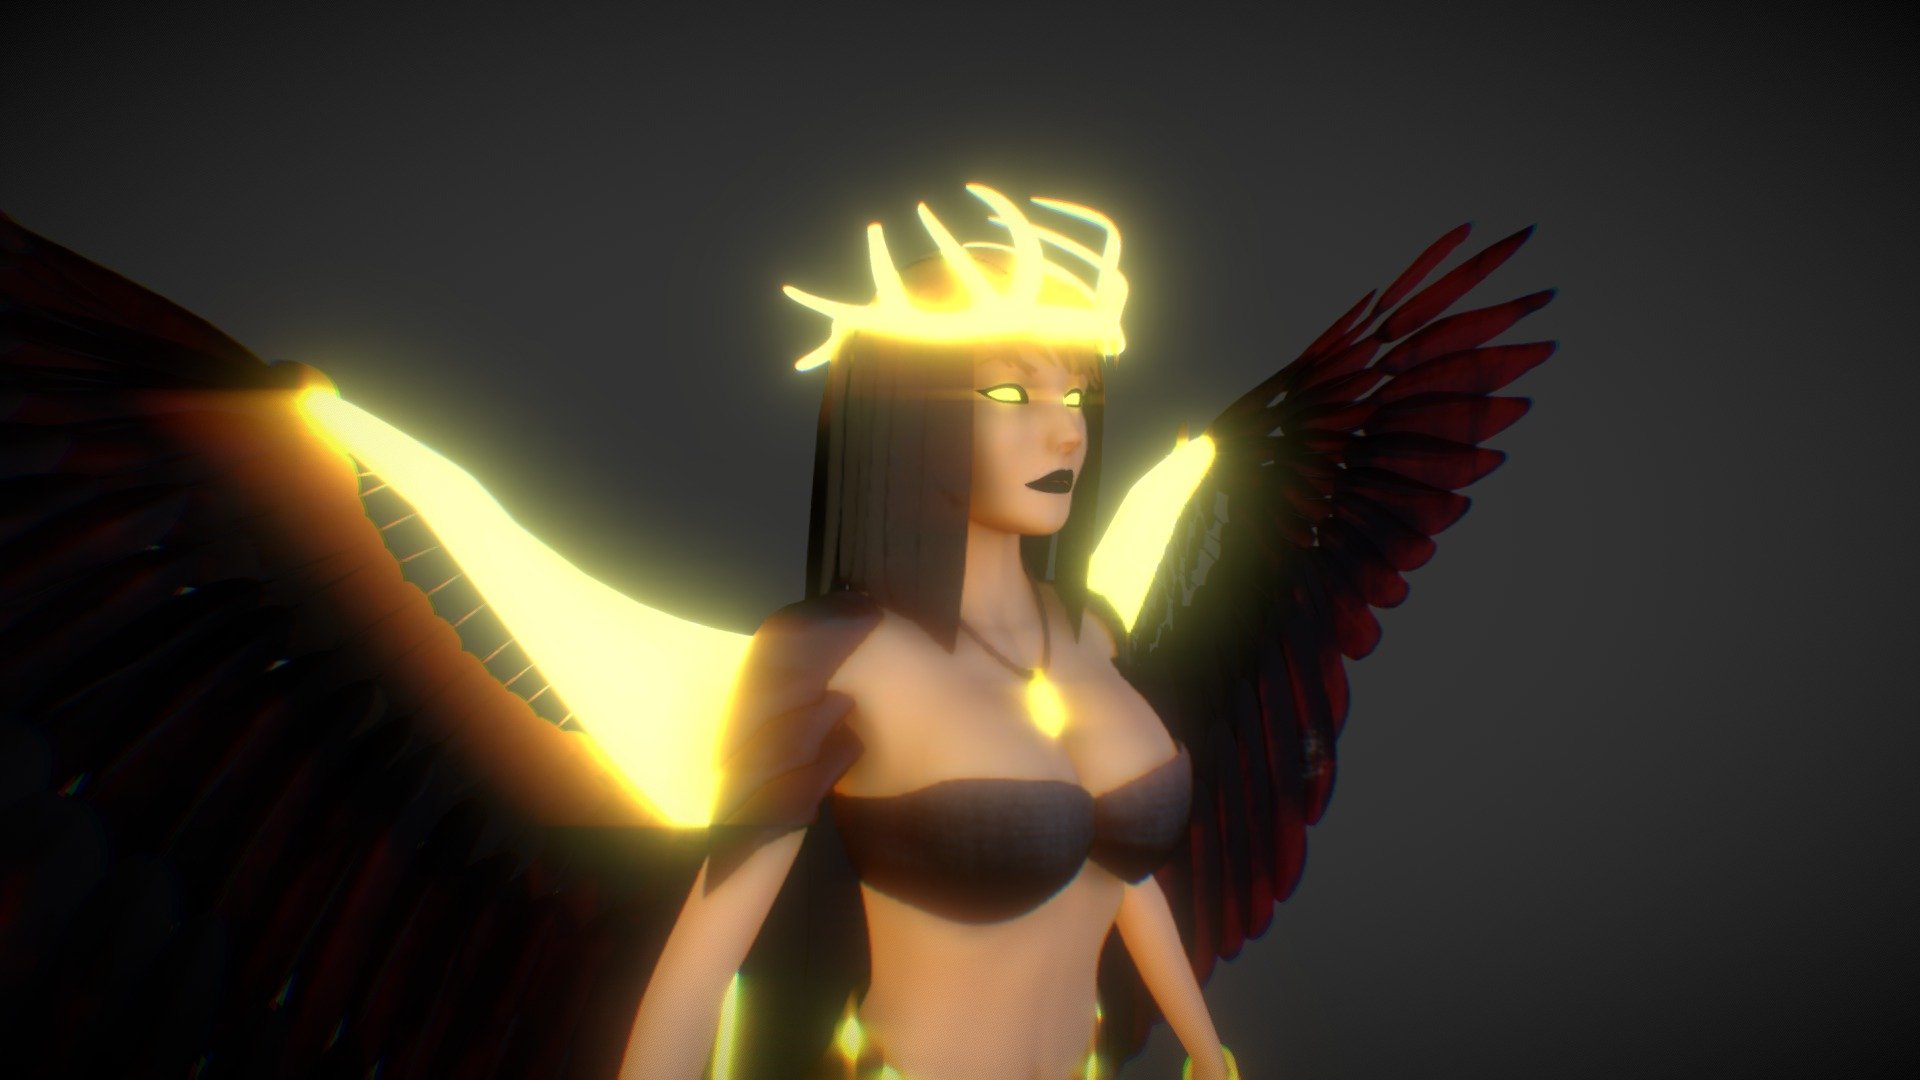 Kida - The Fallen Angel - 3D model by Eduardo Alves 3D (@eduardoalves3d) 3d model